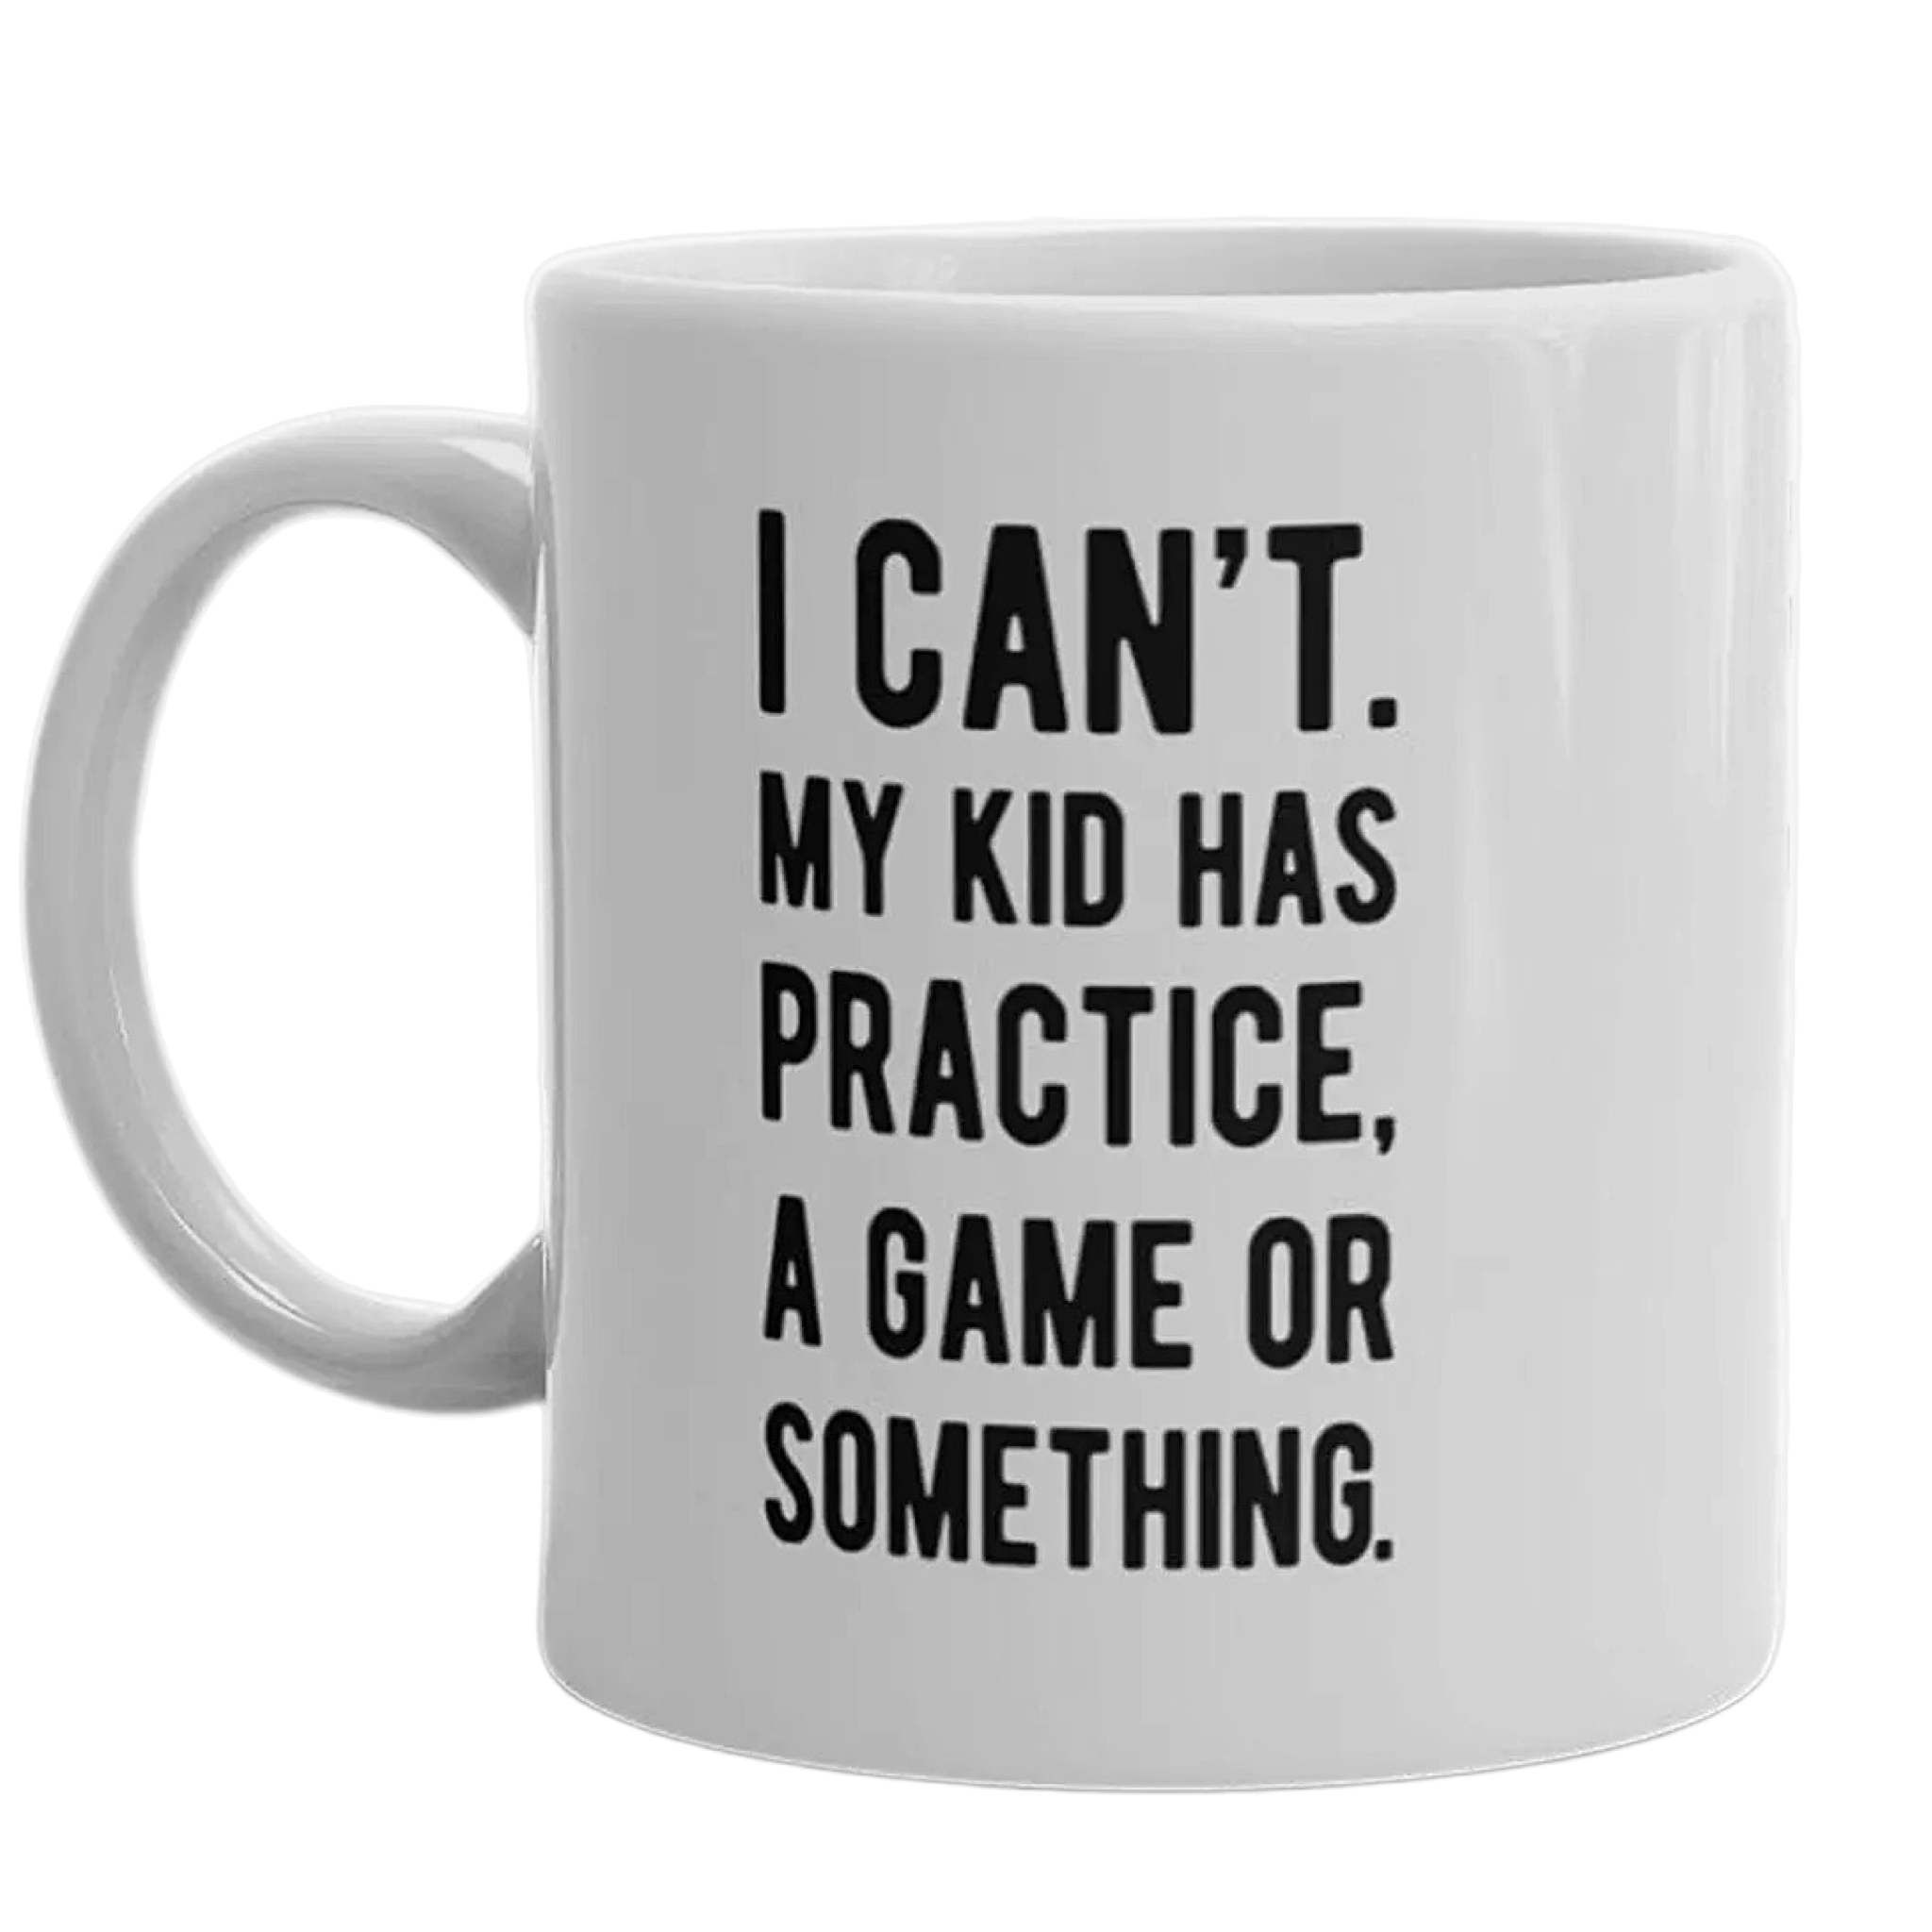 practice or something mug